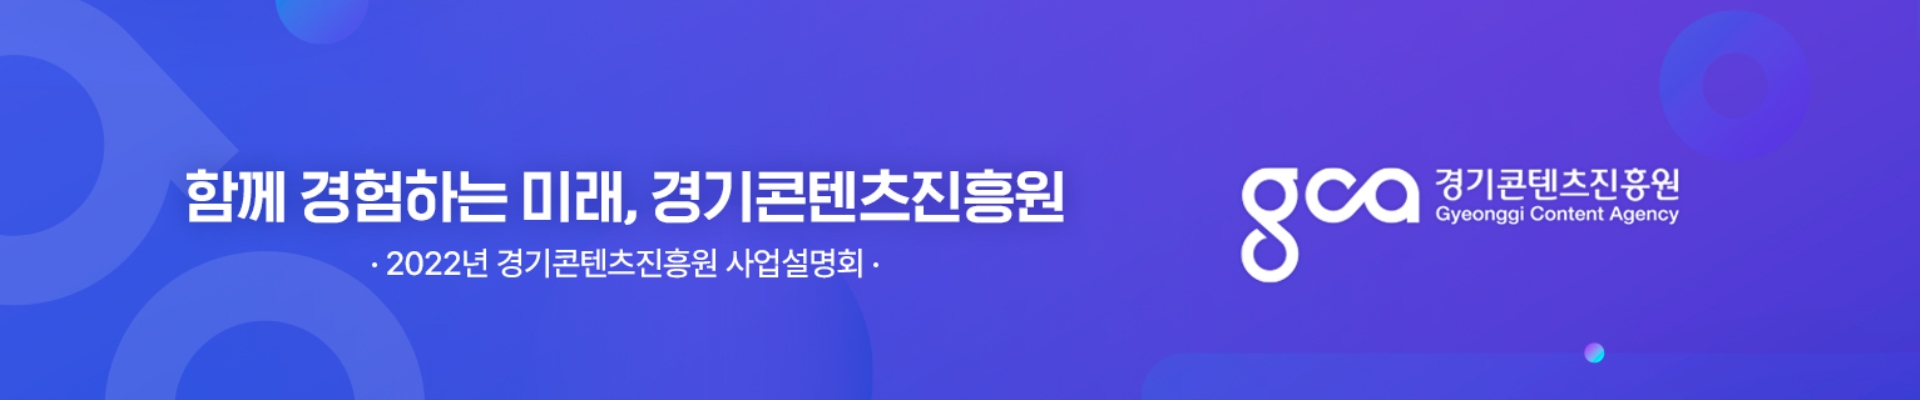 2022년 경기콘텐츠진흥원 온라인 사업설명회